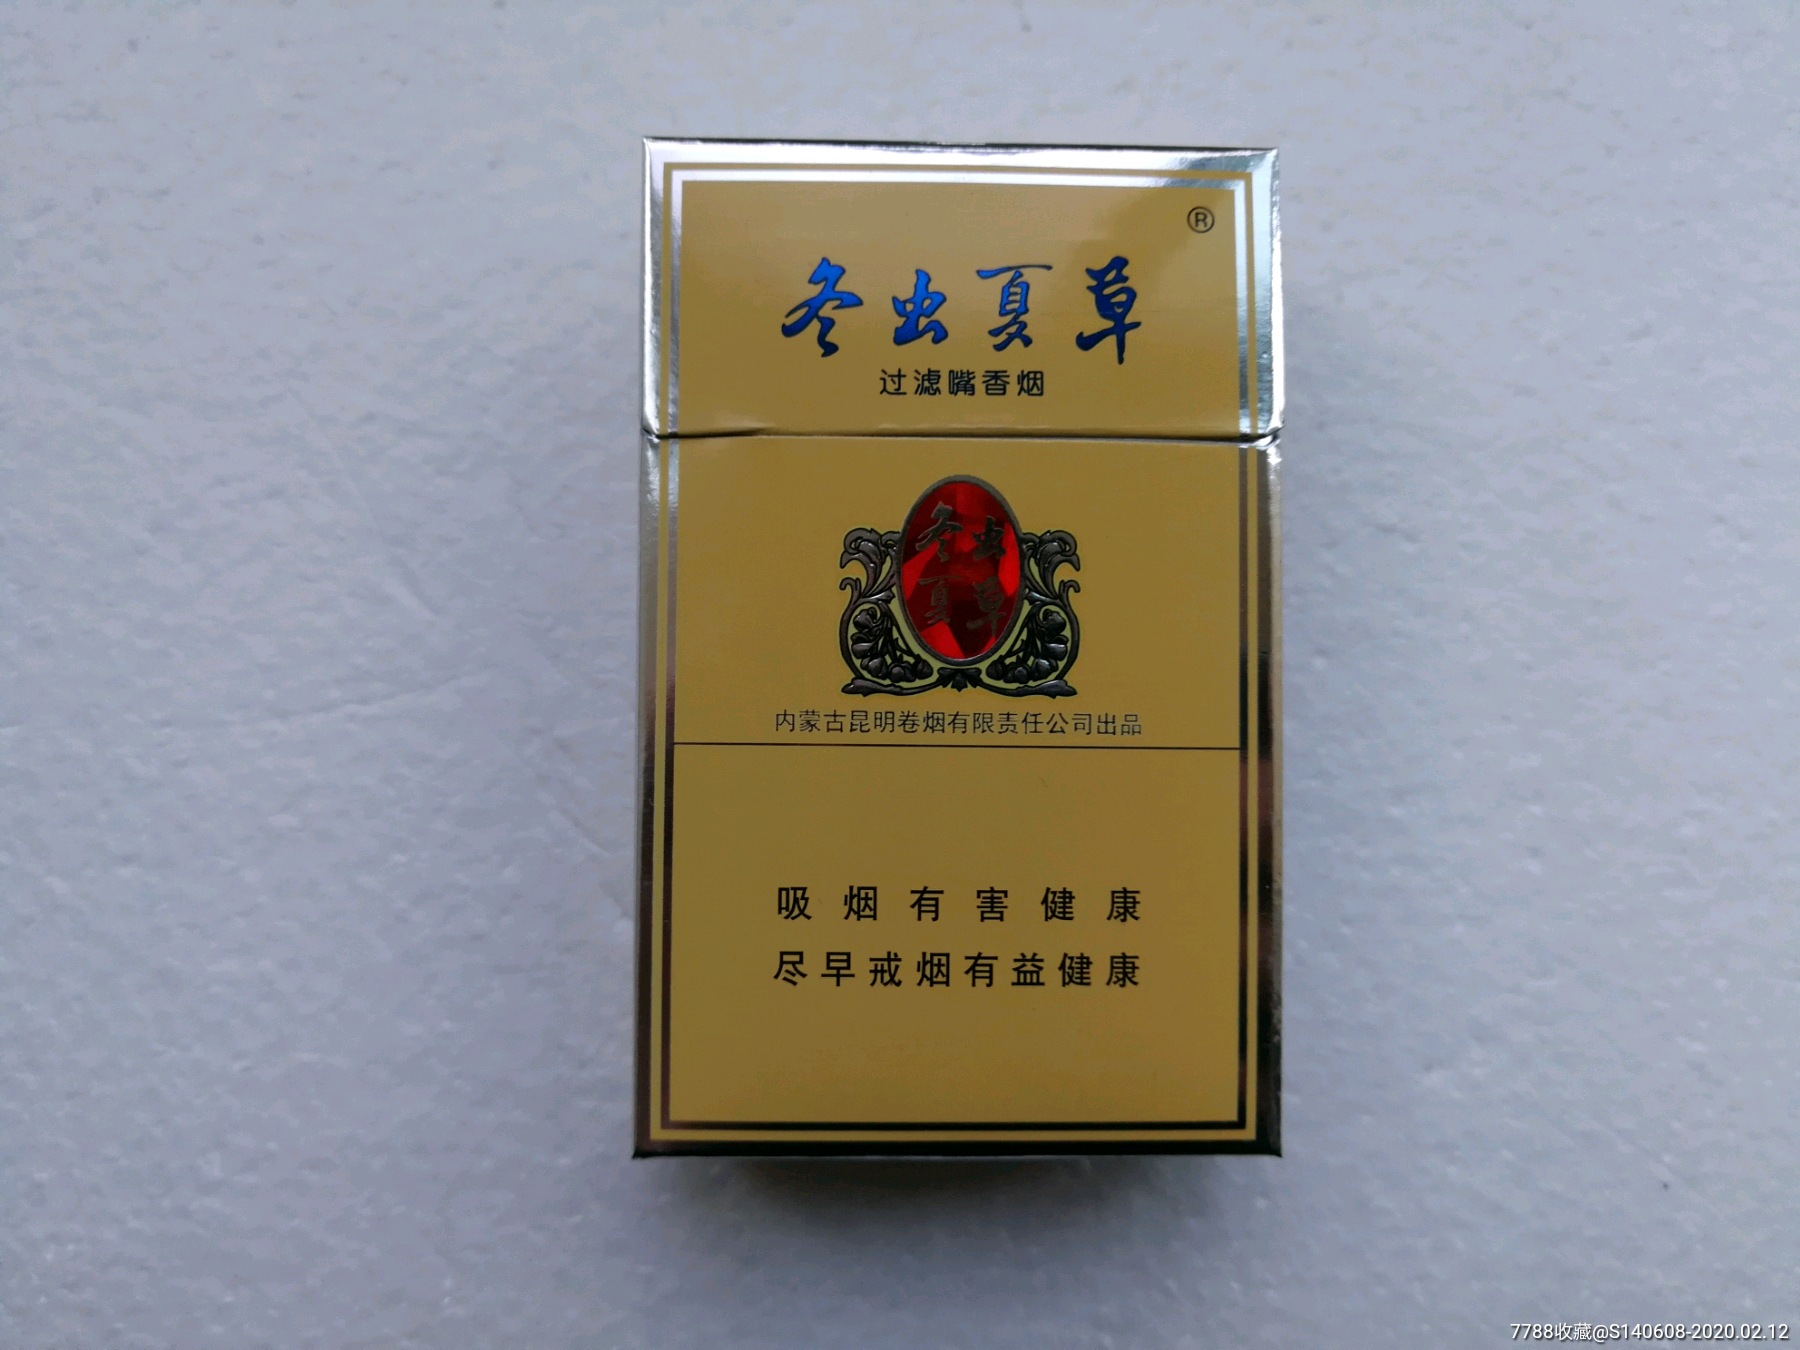 冬虫夏草香烟生产厂家图片